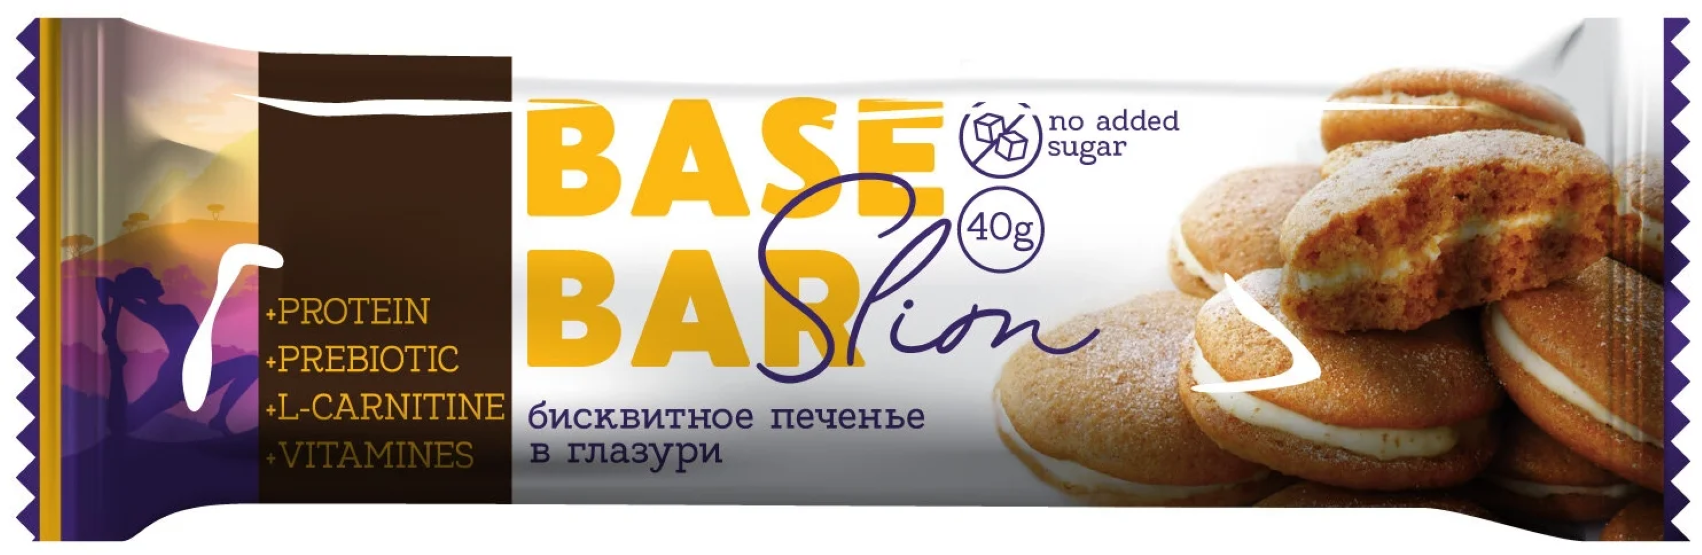 Протеиновый батончик Base Bar Slim 40 г с L-карнитином бисквитное печенье 6 шт.